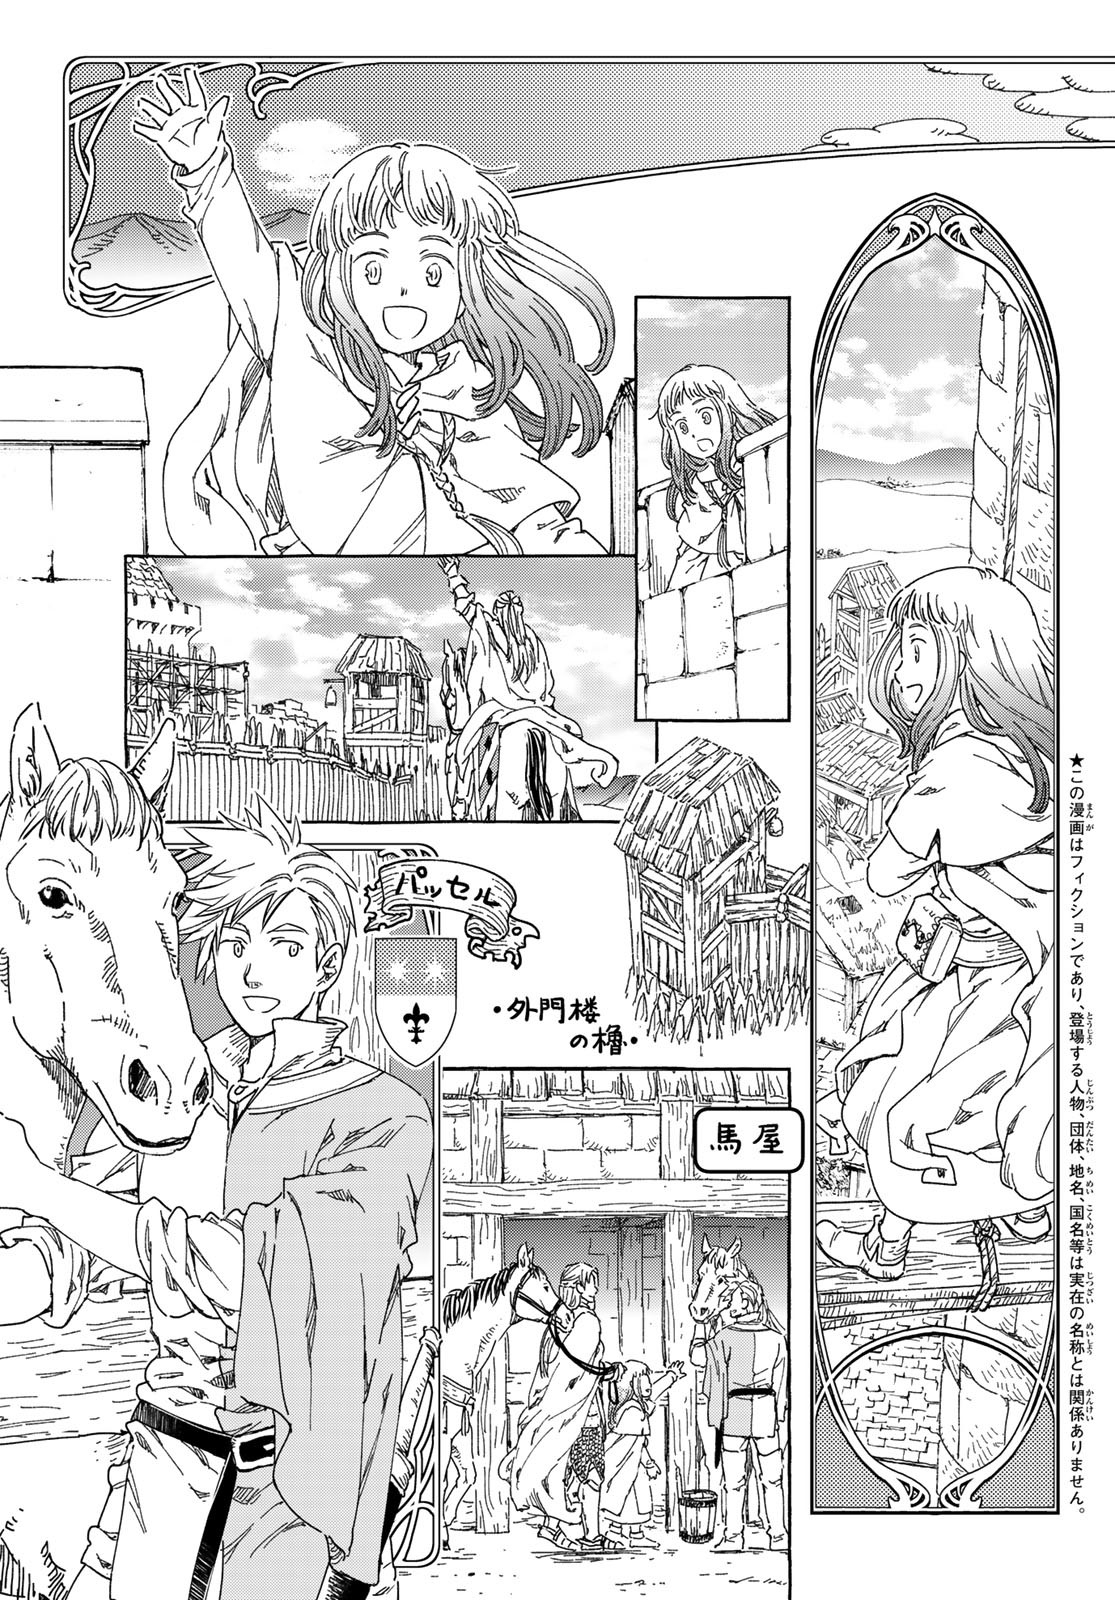 Mugou no Schnell Gear: Chikyuugai Kisouka AI - Chapter 49 - Page 5